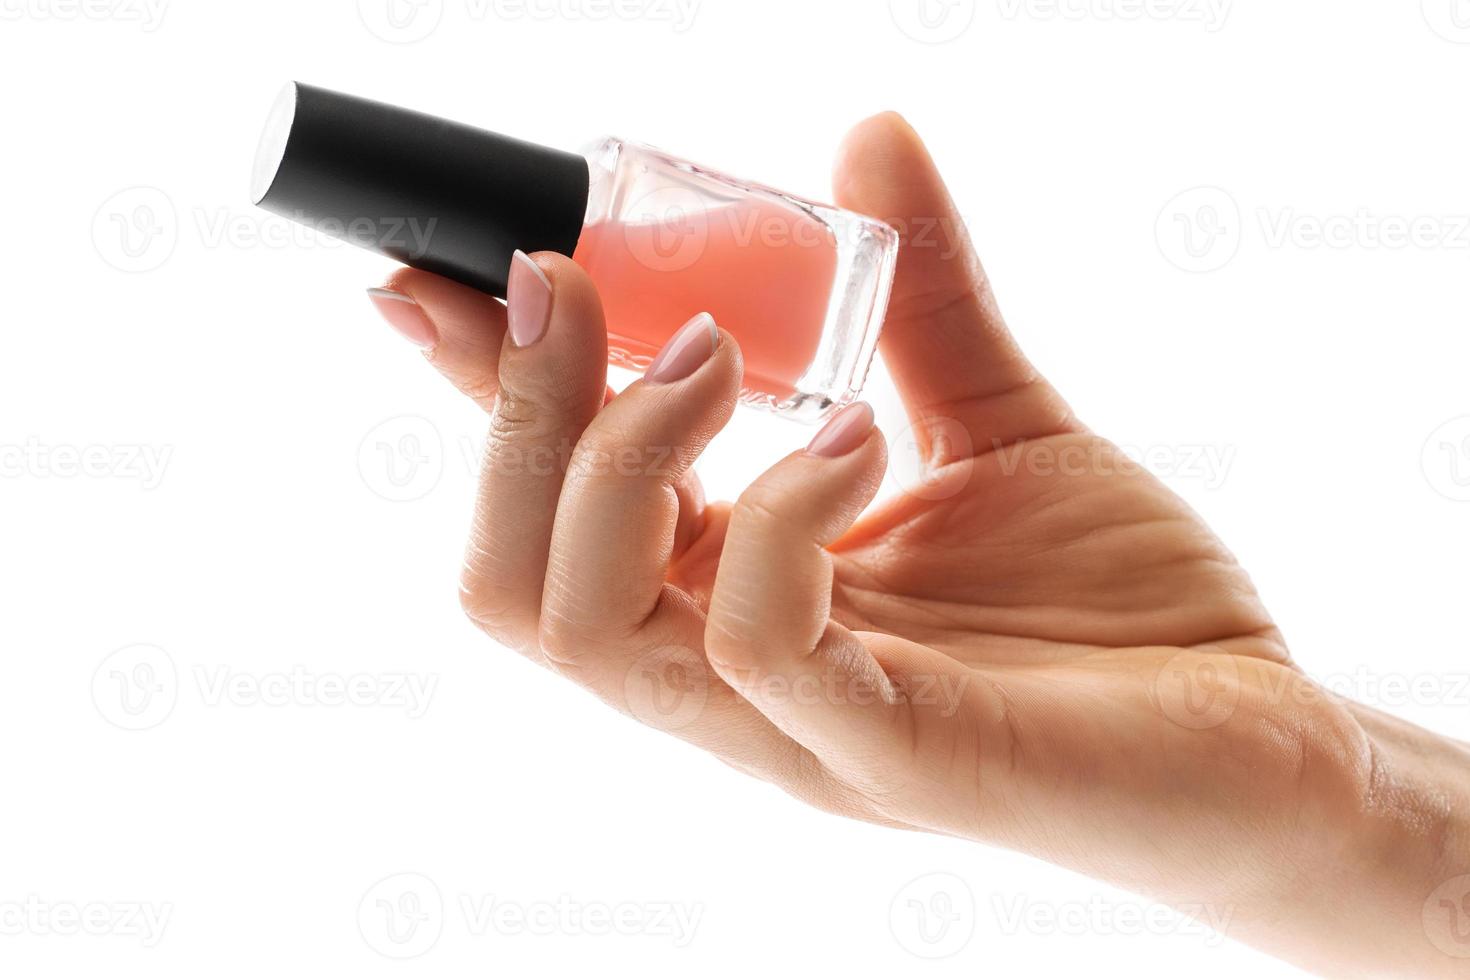 femmina mano con bellissimo francese manicure Tenere bottiglia di rosa chiodo polacco contro bianca sfondo foto